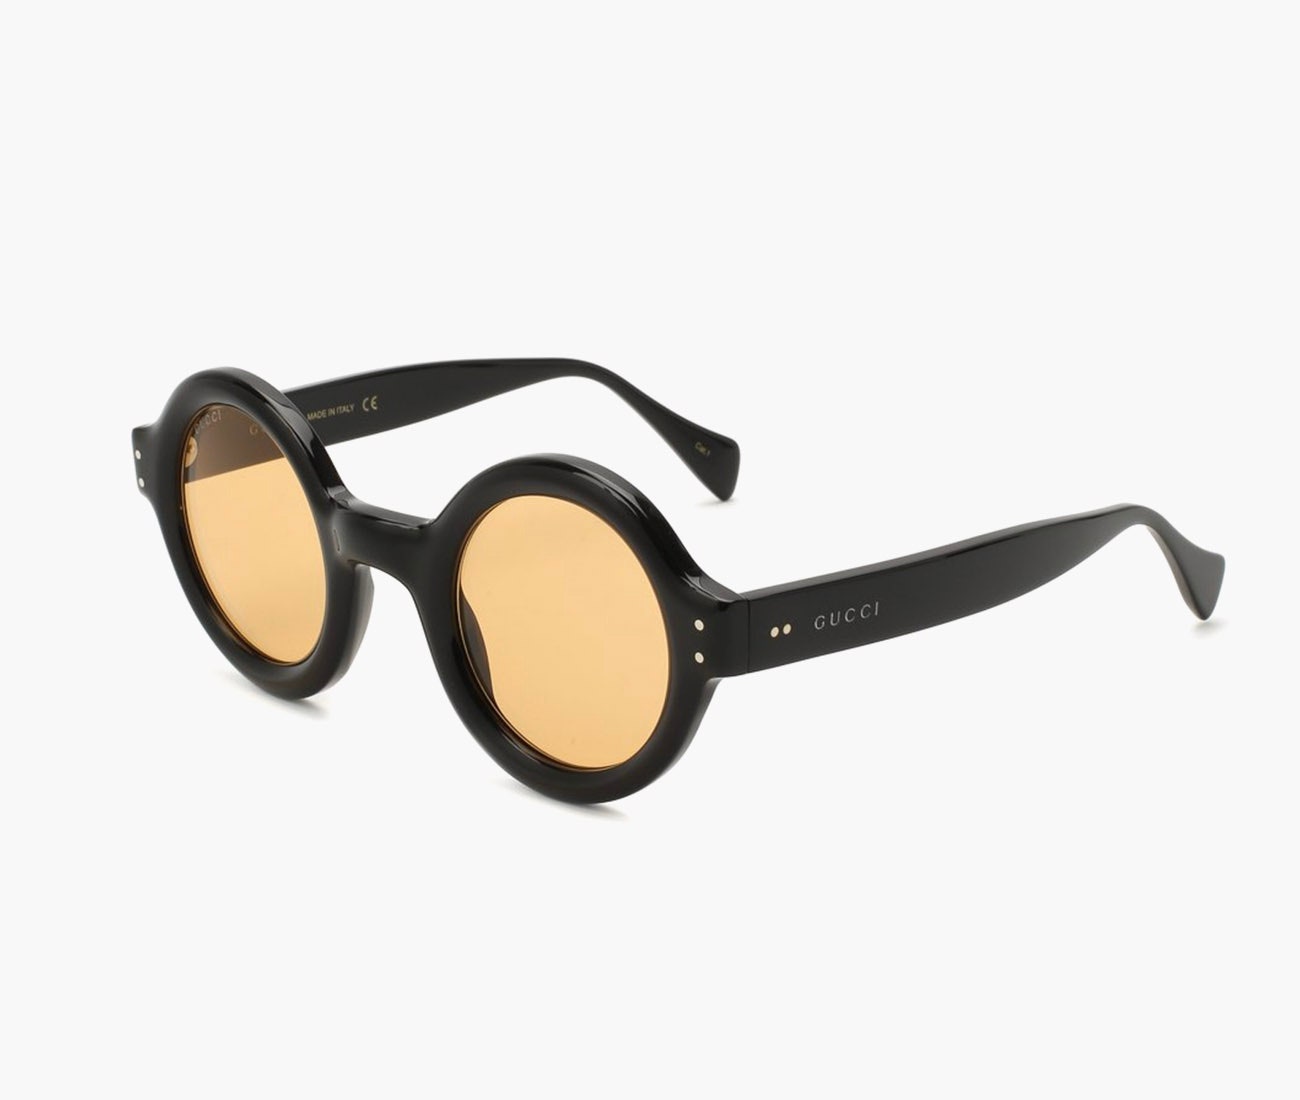 Солнцезащитные очки Gucci 41500 рублей tsum.ru